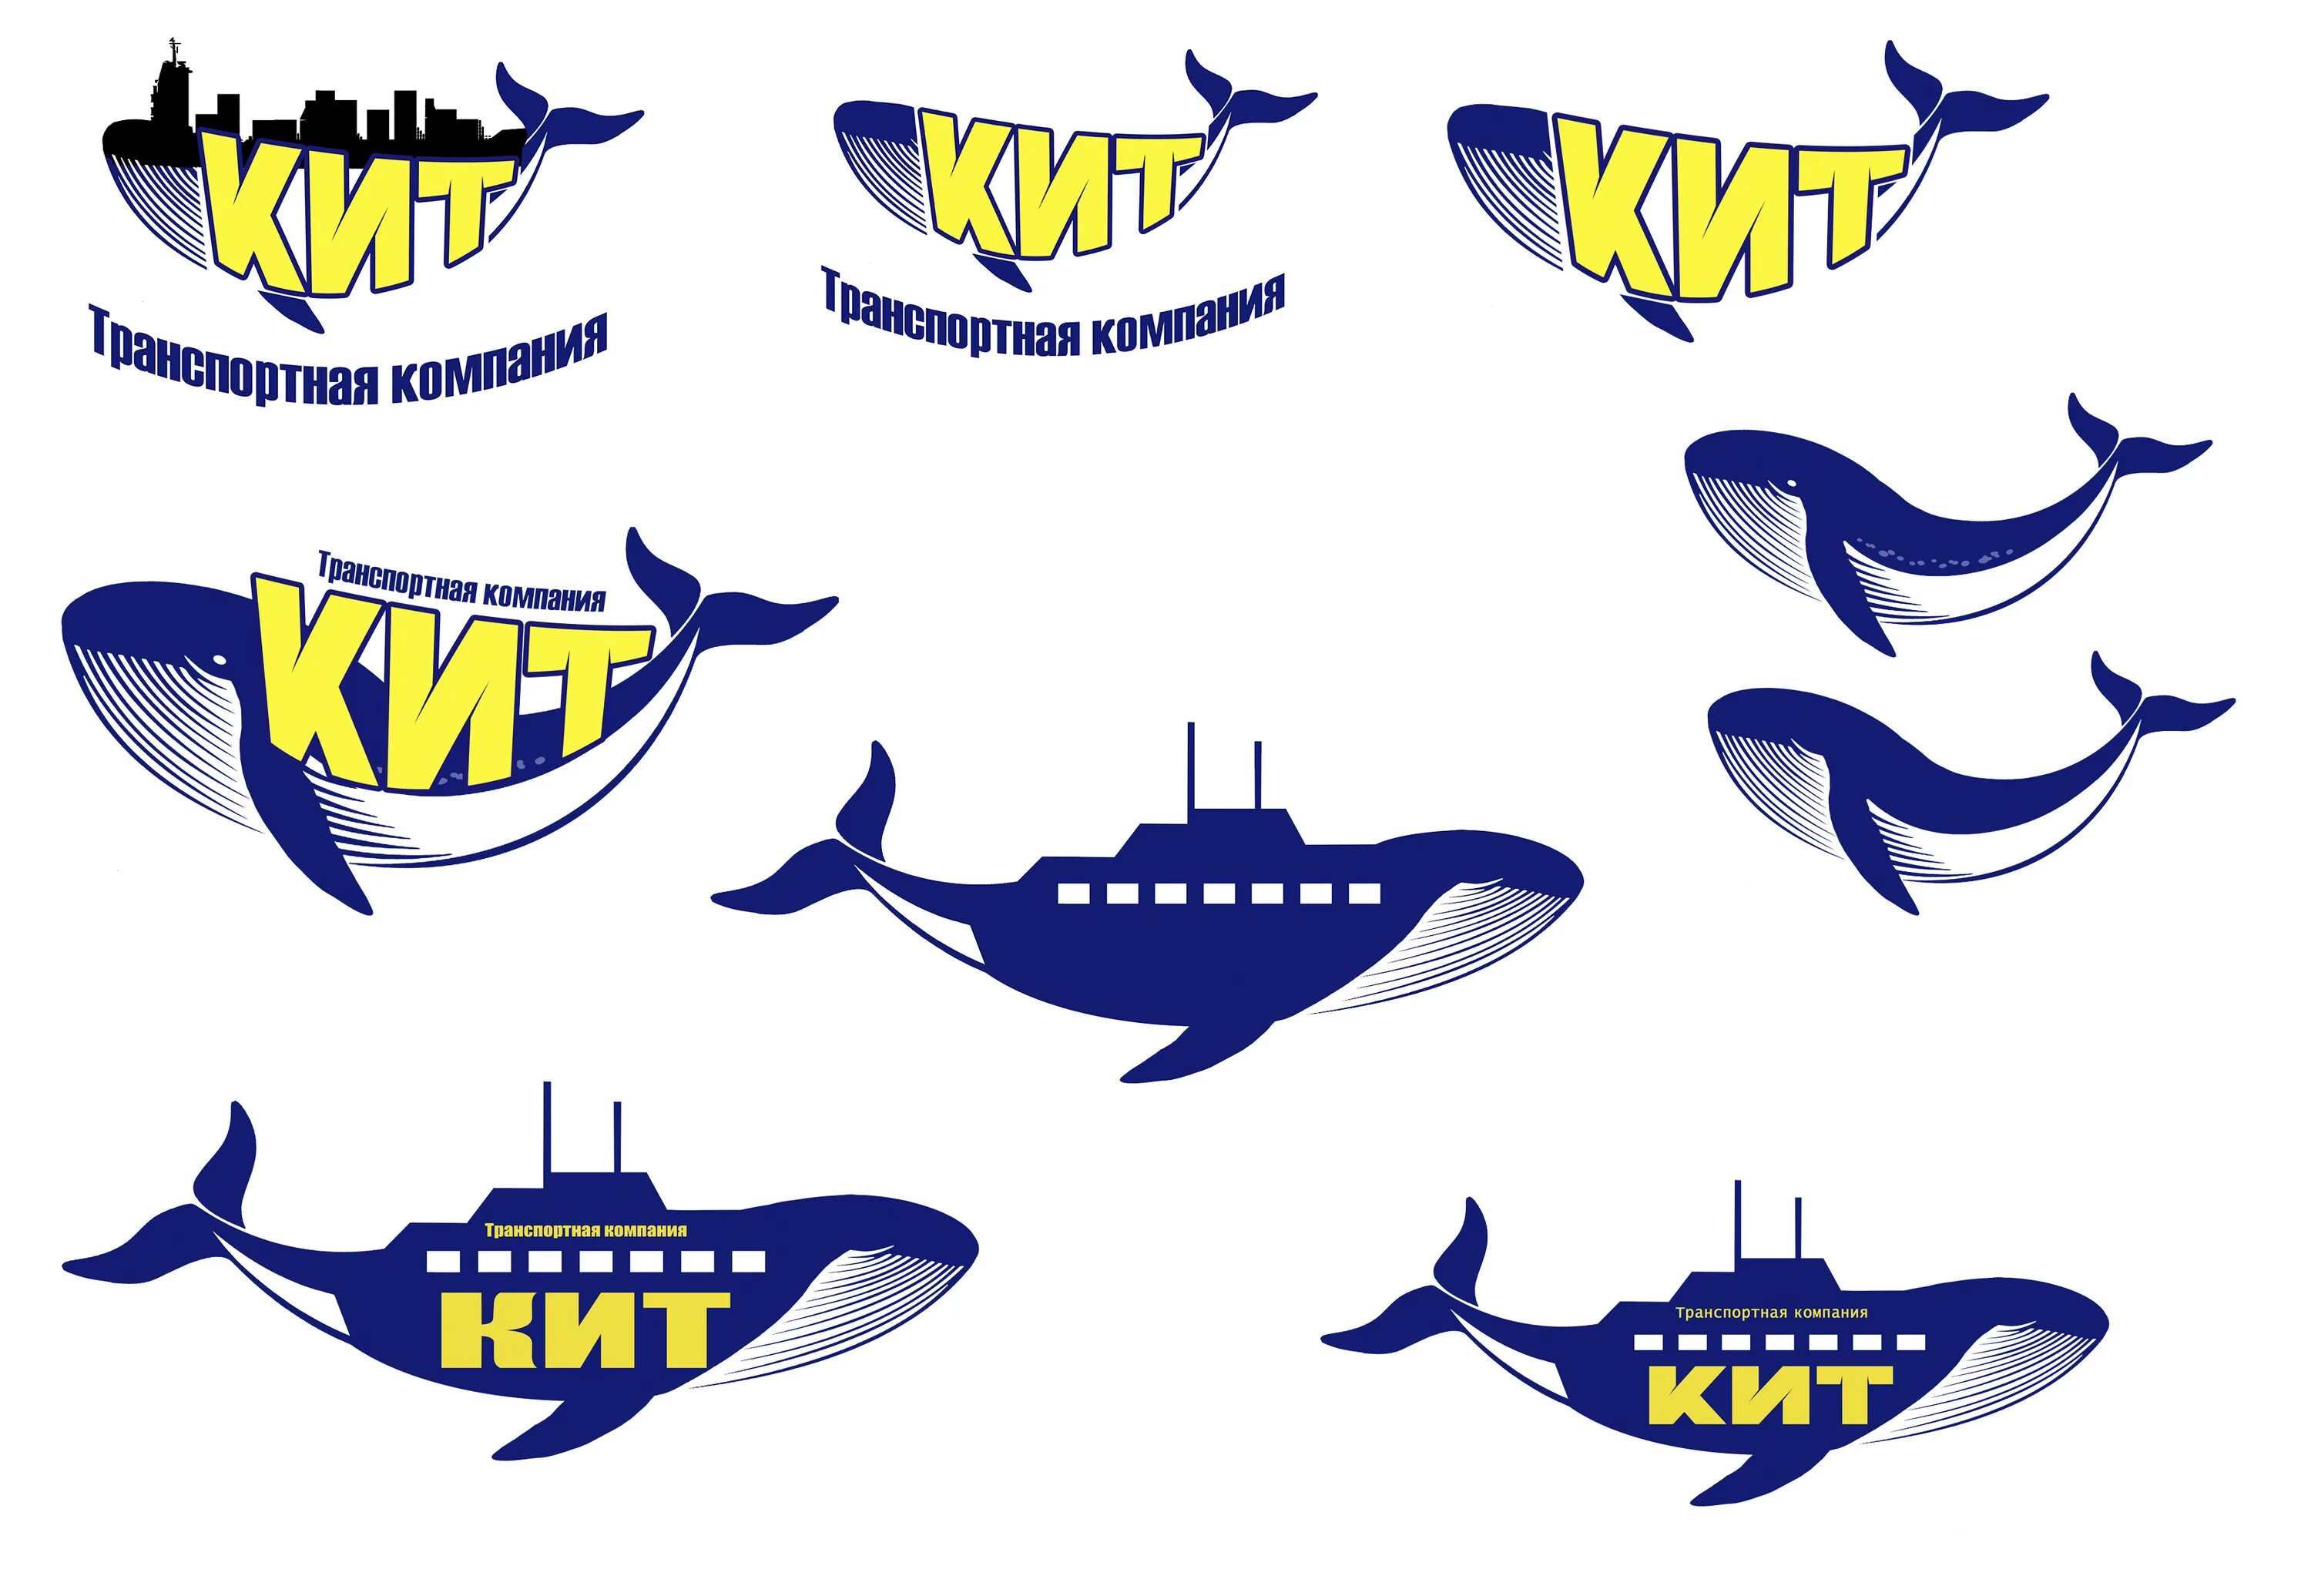 Кит транспортная компания логотип. ТК кит логотип транспортная компания. Значок ТК кит. Транспортная компания кит GTD логотип.